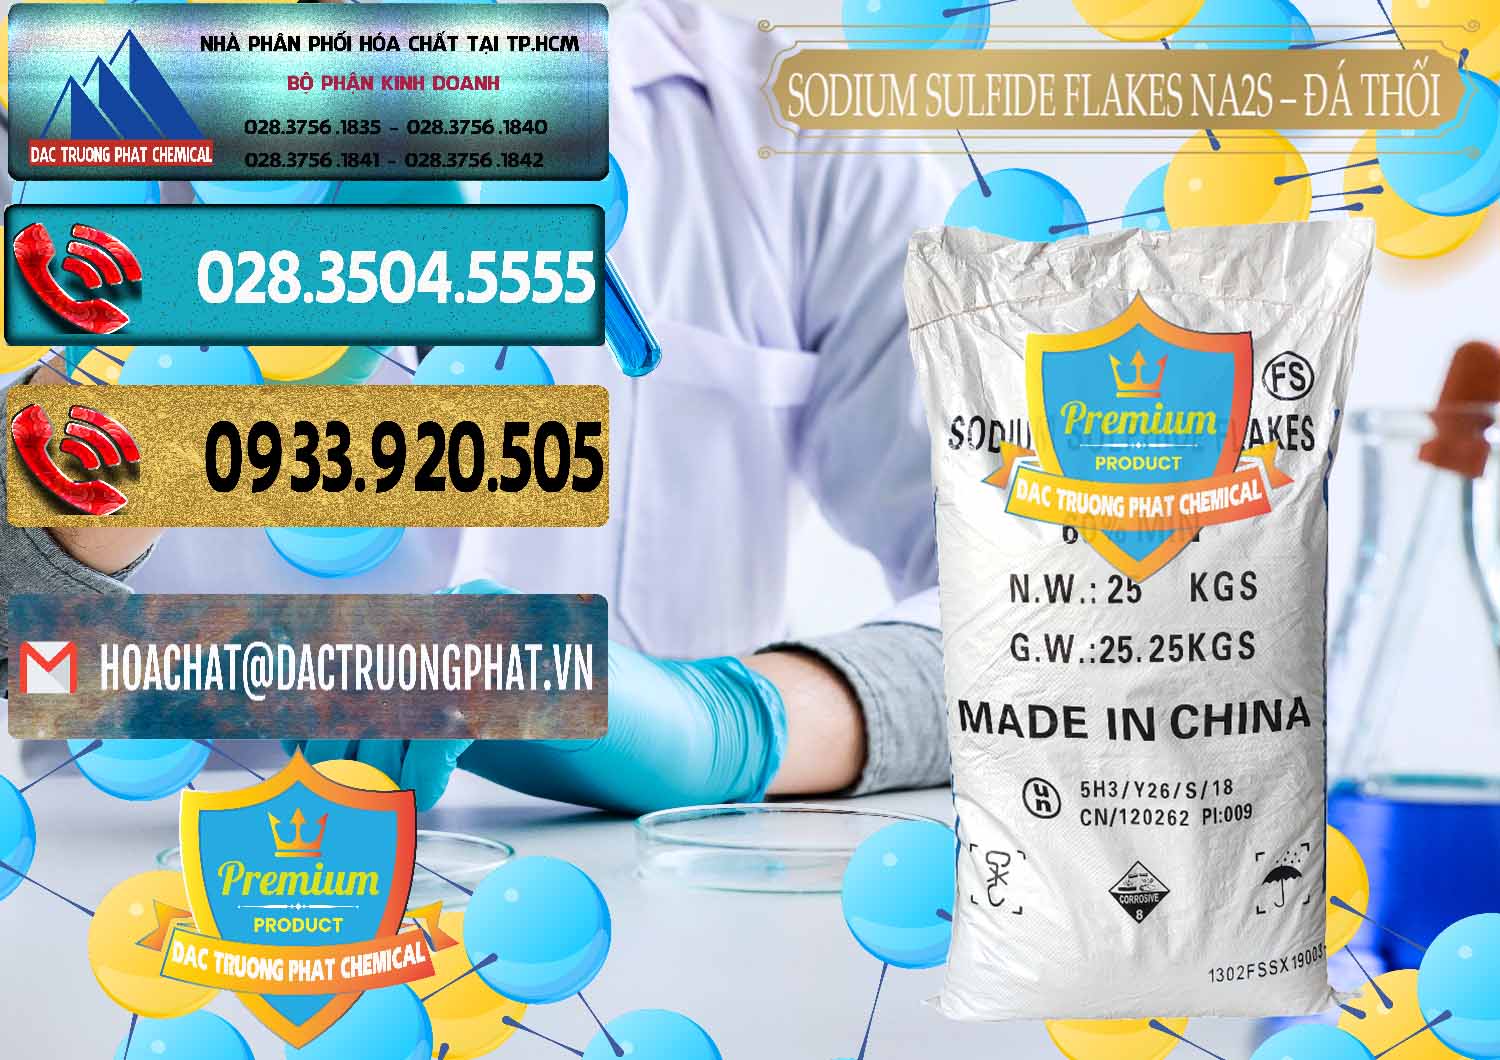 Nơi chuyên bán & cung cấp Sodium Sulfide Flakes NA2S – Đá Thối Đỏ Trung Quốc China - 0150 - Cty chuyên phân phối - kinh doanh hóa chất tại TP.HCM - hoachatdetnhuom.com